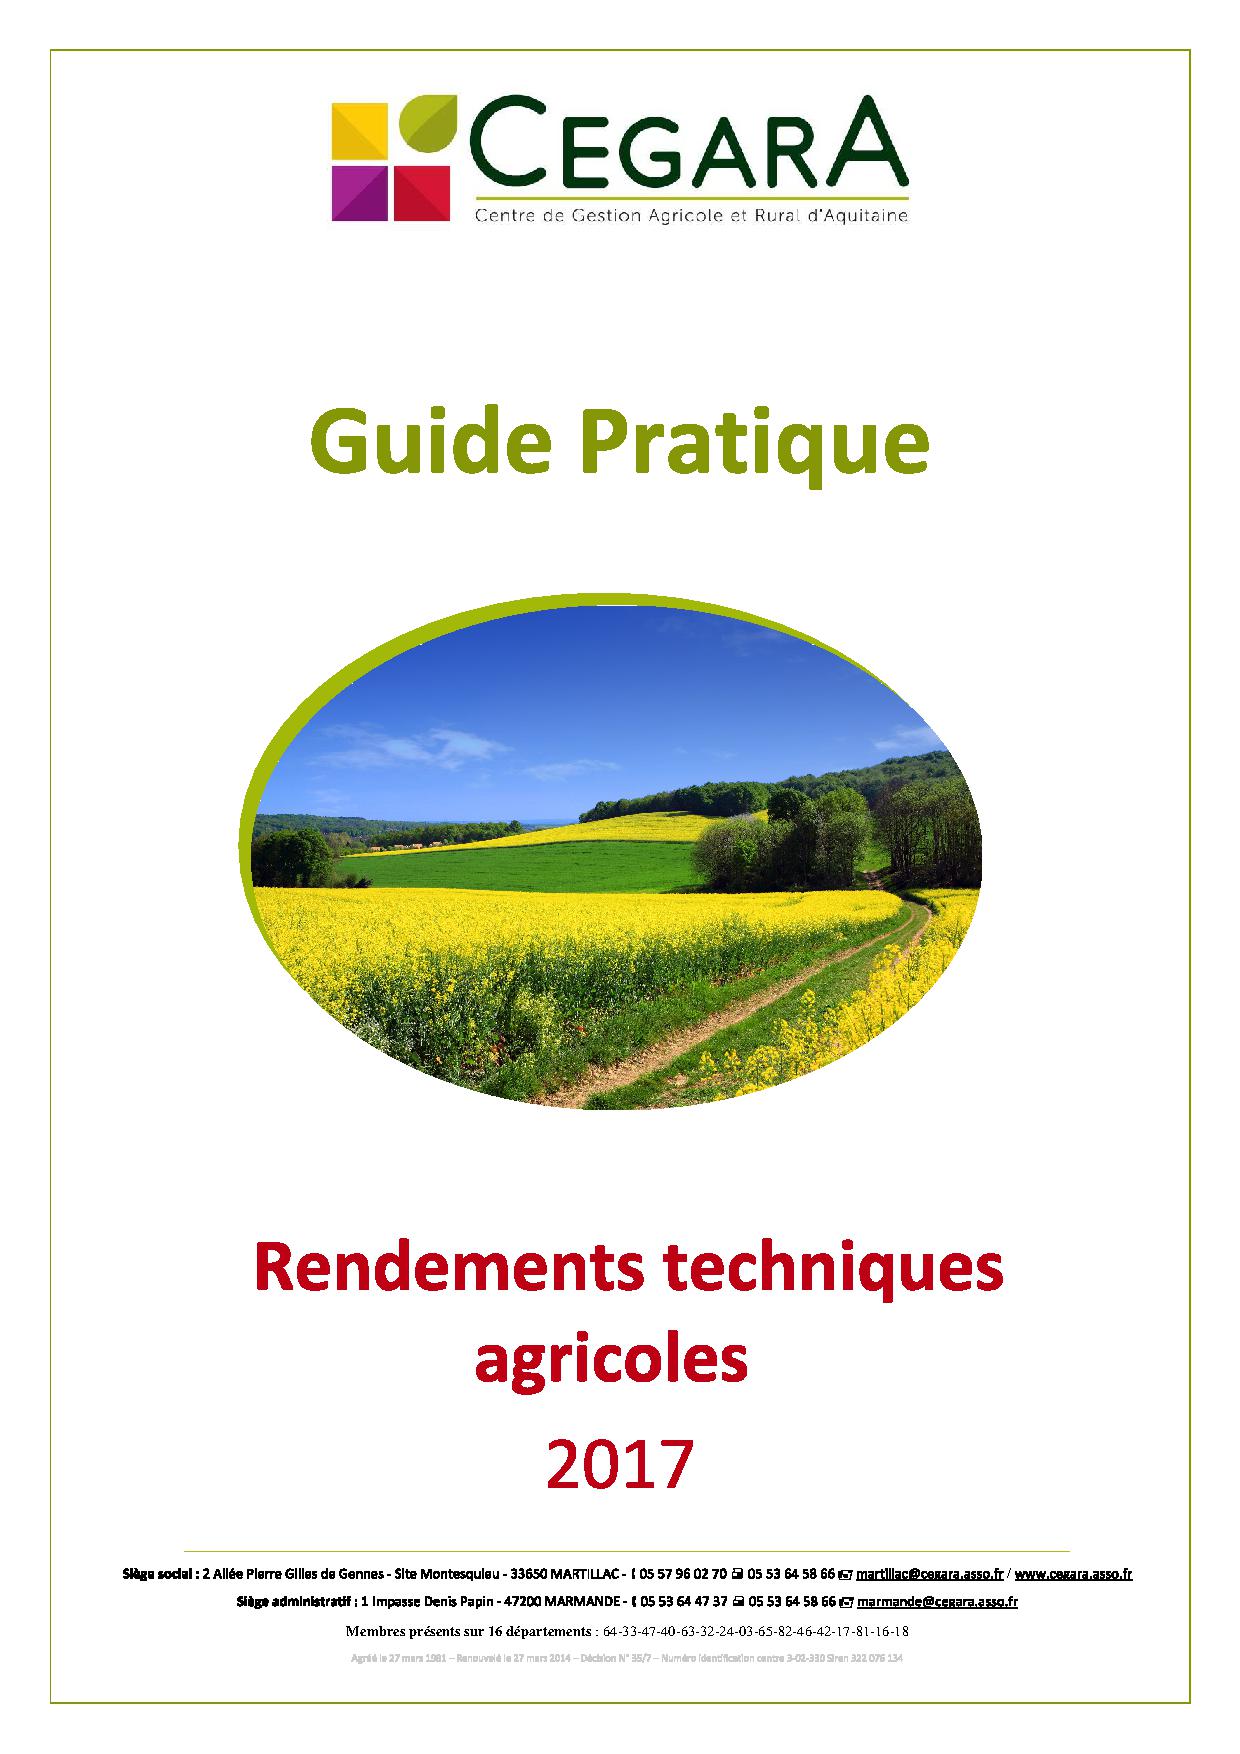 Rendements techniques agricoles 2017